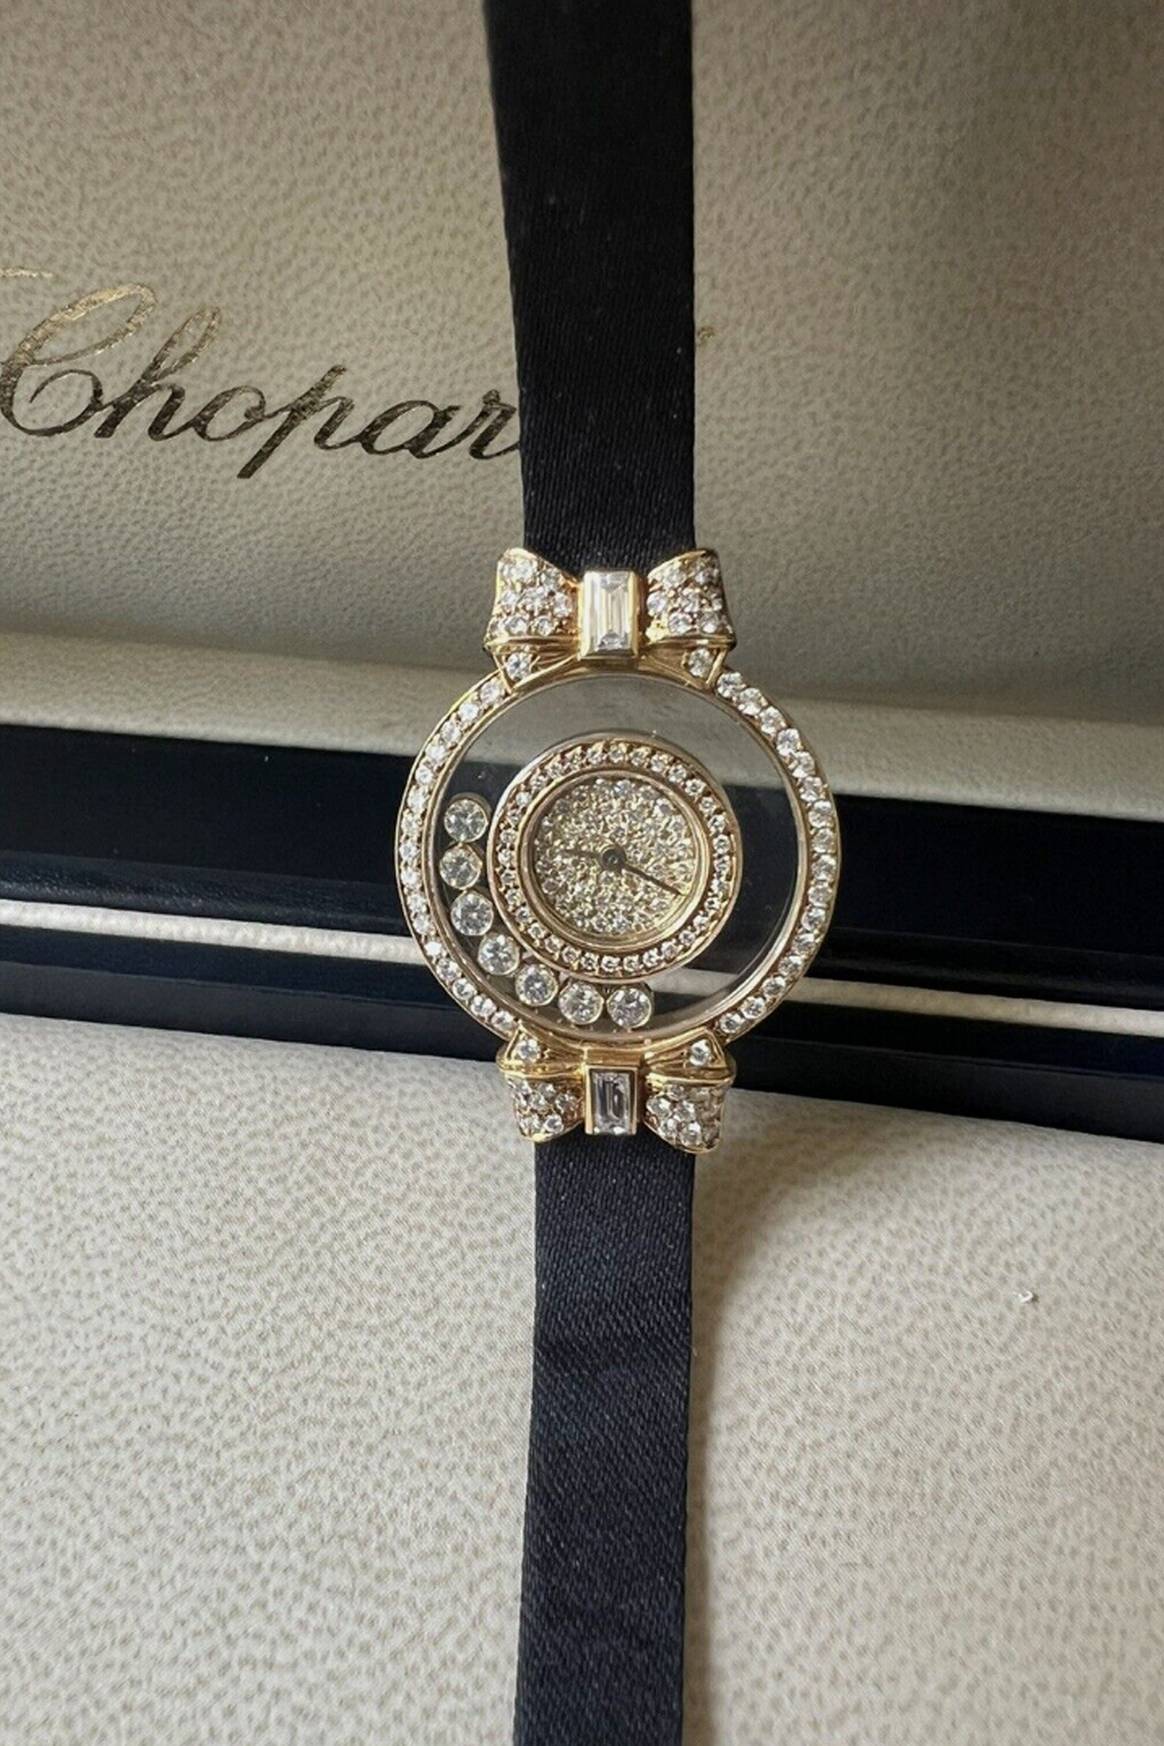 Chopard watch on ebay